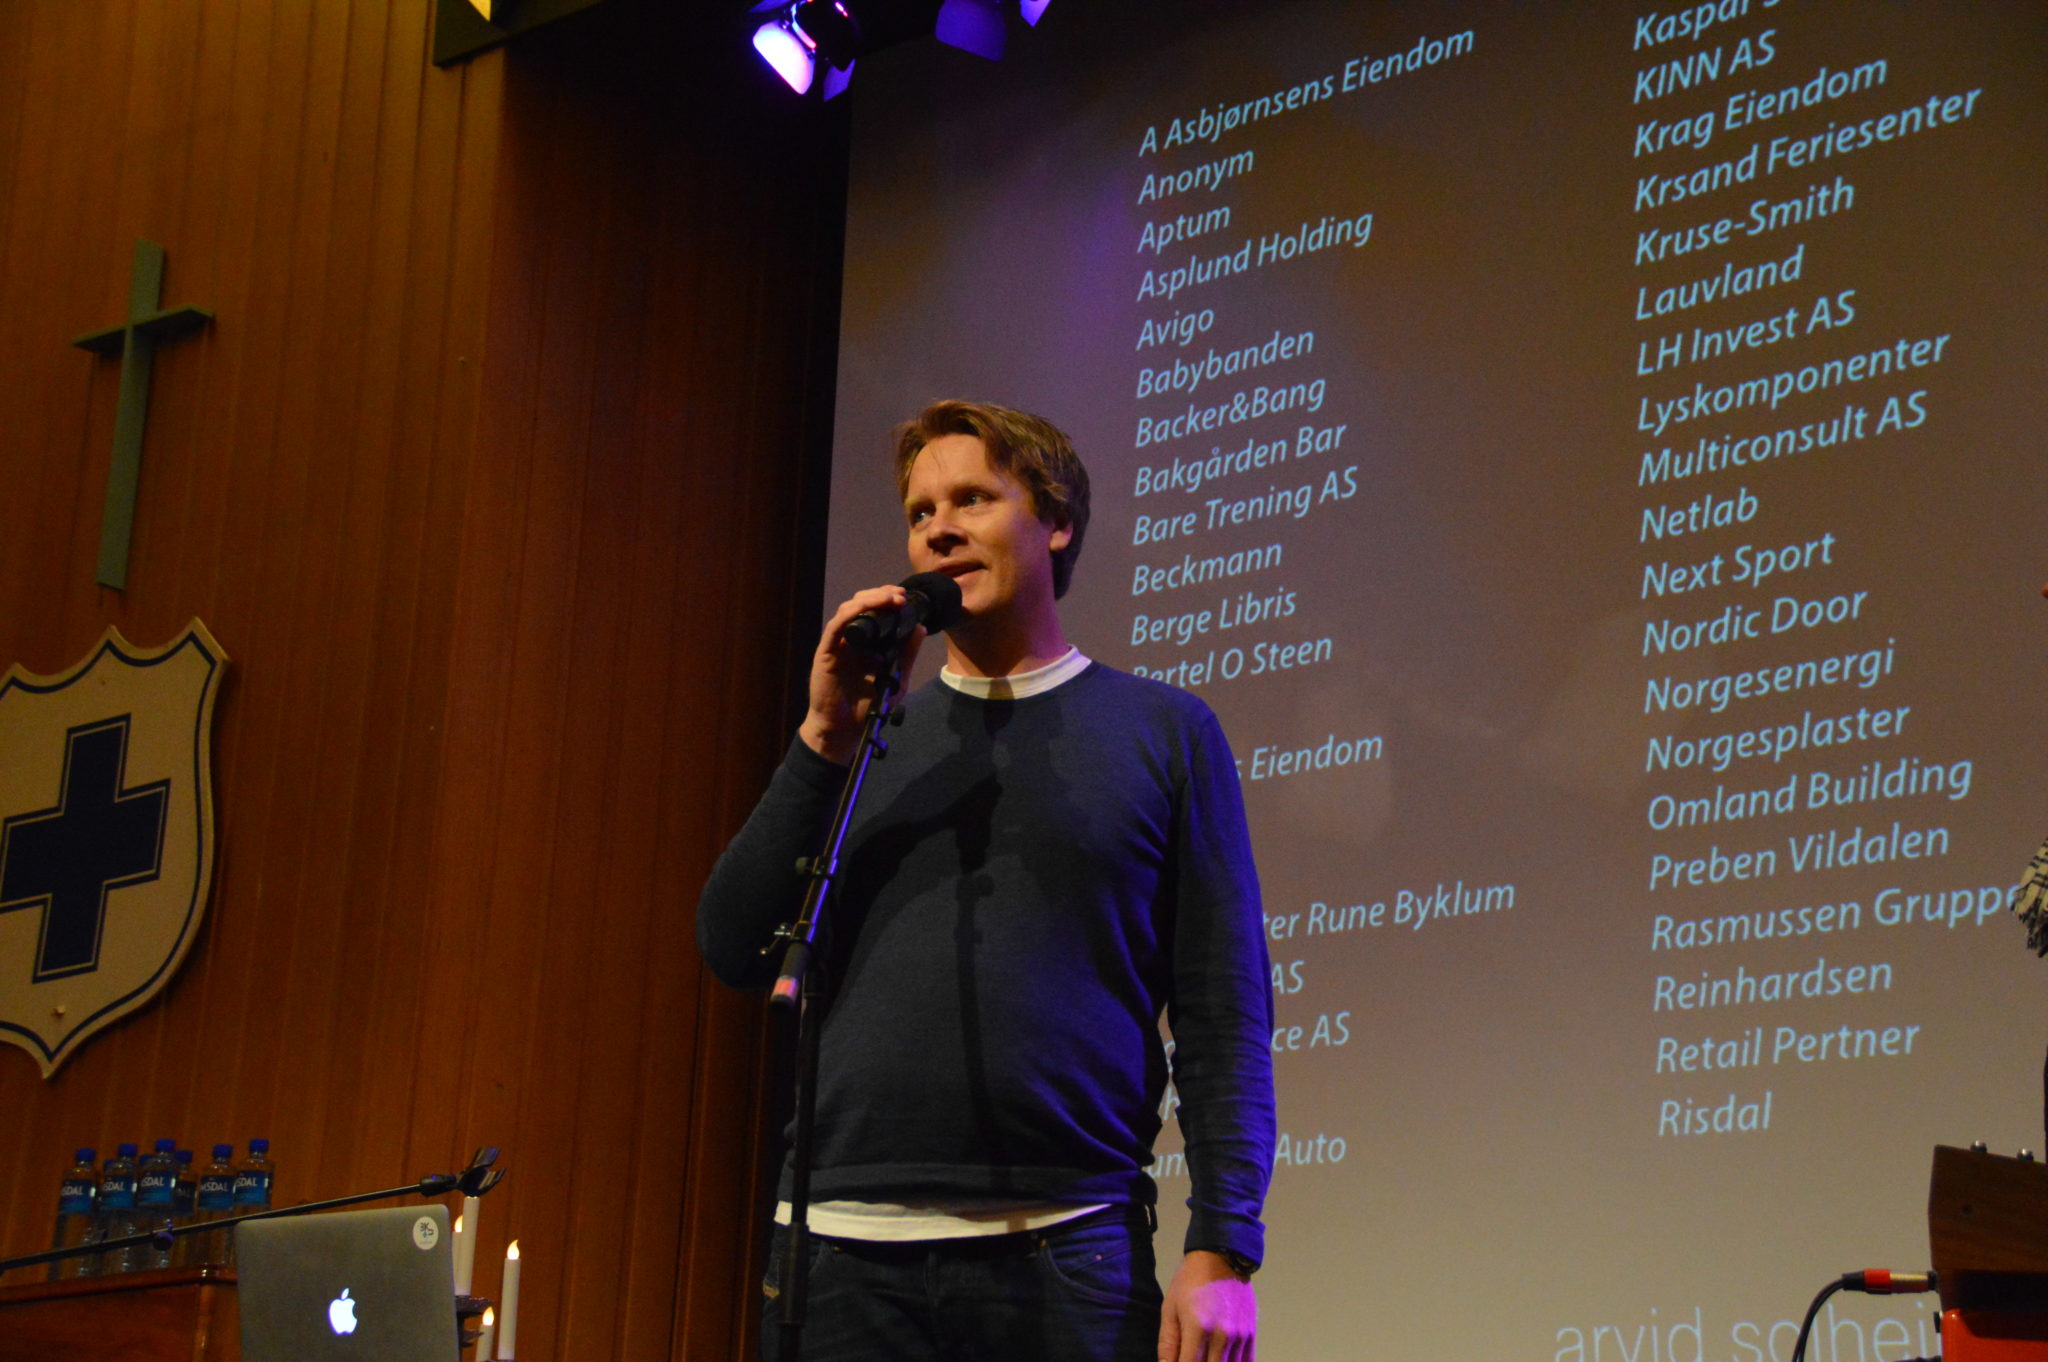 Markedsansvarlig i Blå Kors Kristiansand, Henning Reme, presenterer listen over givere i Storsalen på Blå Kors foran 500 konsertpublikummere.